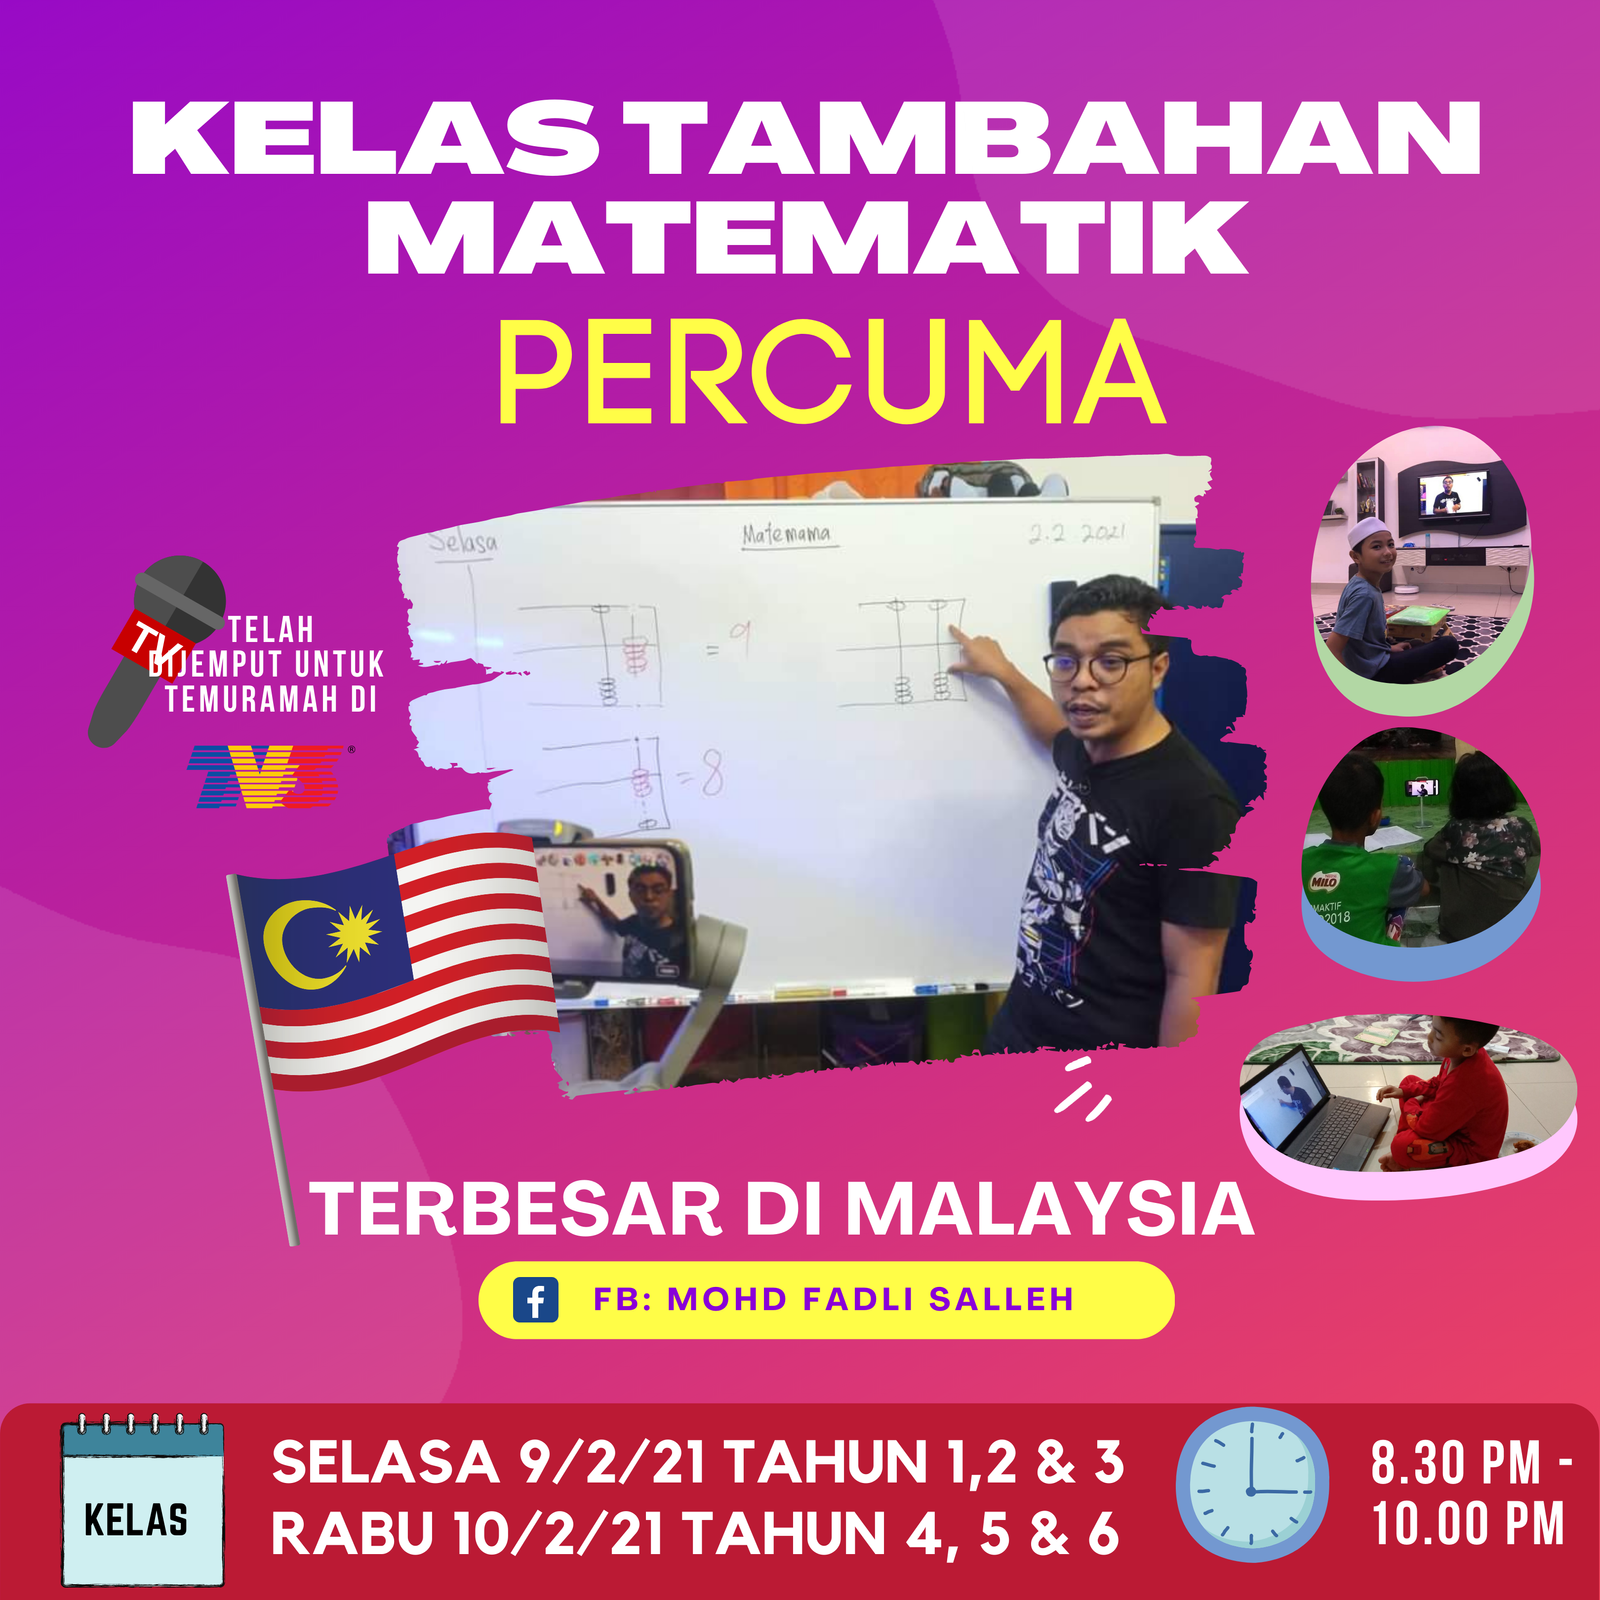 Siri 3 – Tahun 1, 2 dan 3 Matematik Kelas Live Percuma LIVE Terbesar di Malaysia 9 Feb 2021 oleh Cikgu Mohd Fadli Salleh